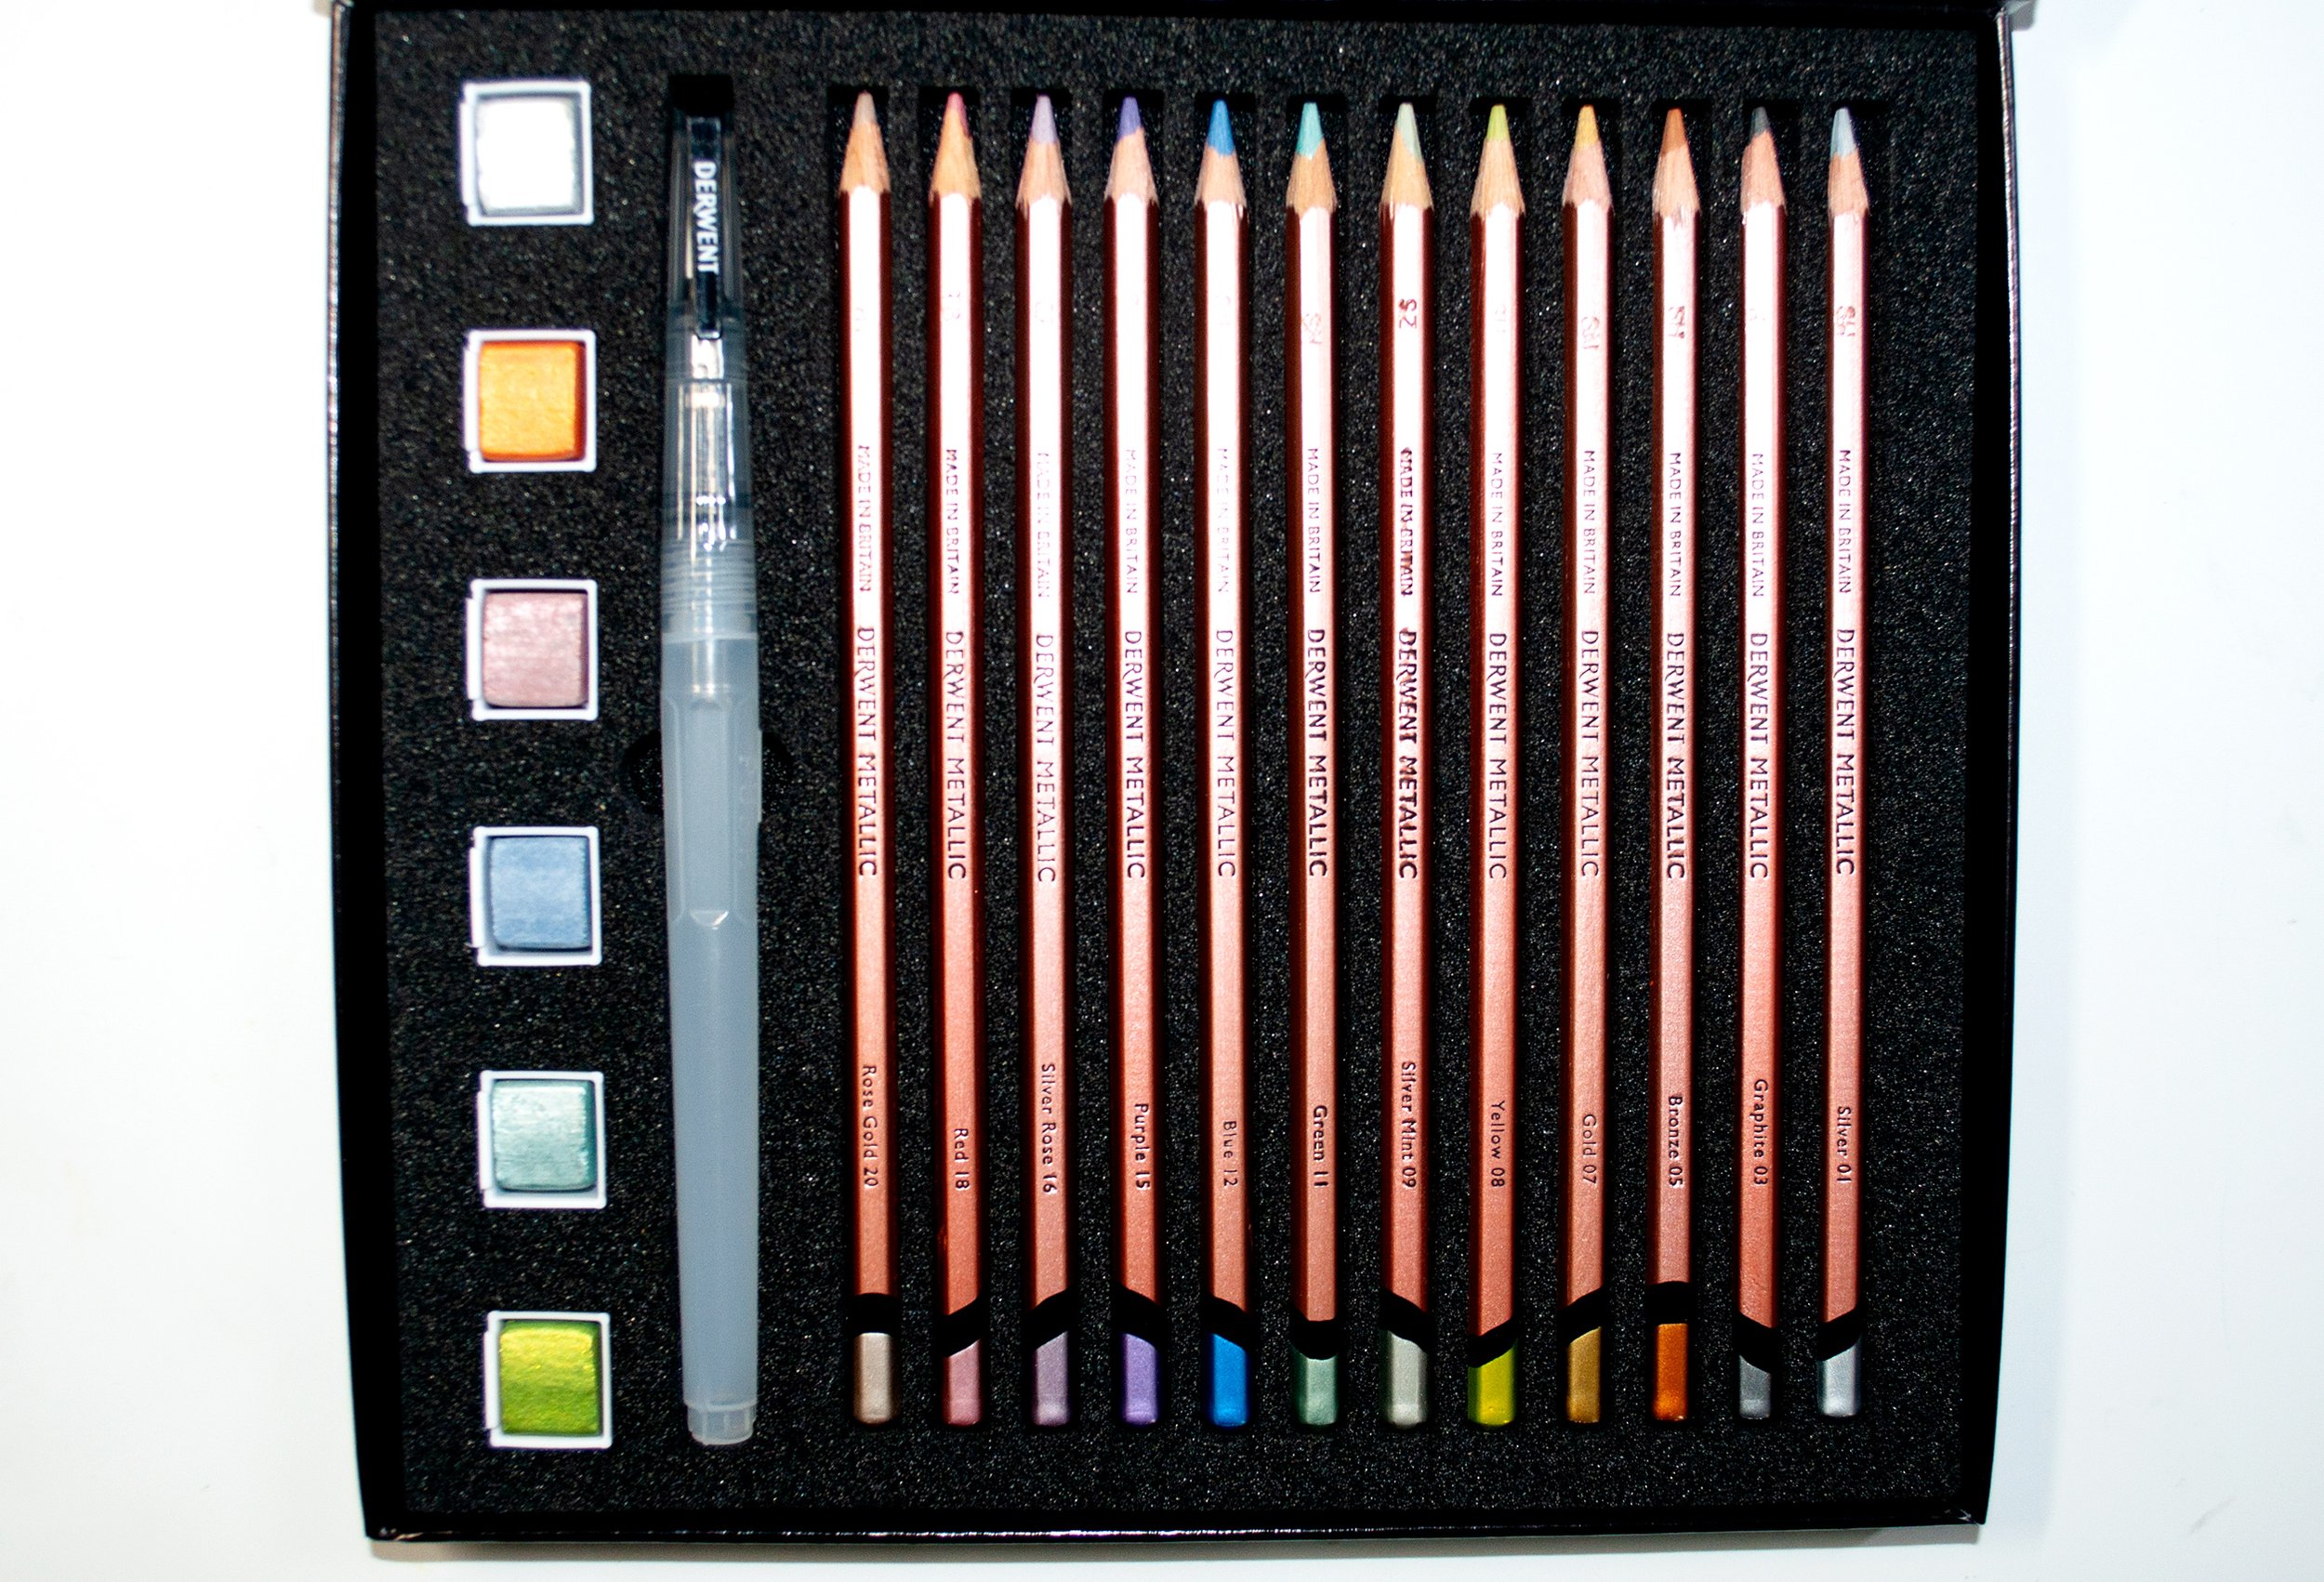 Derwent Metallic Pencil, Anniversary Set of 20